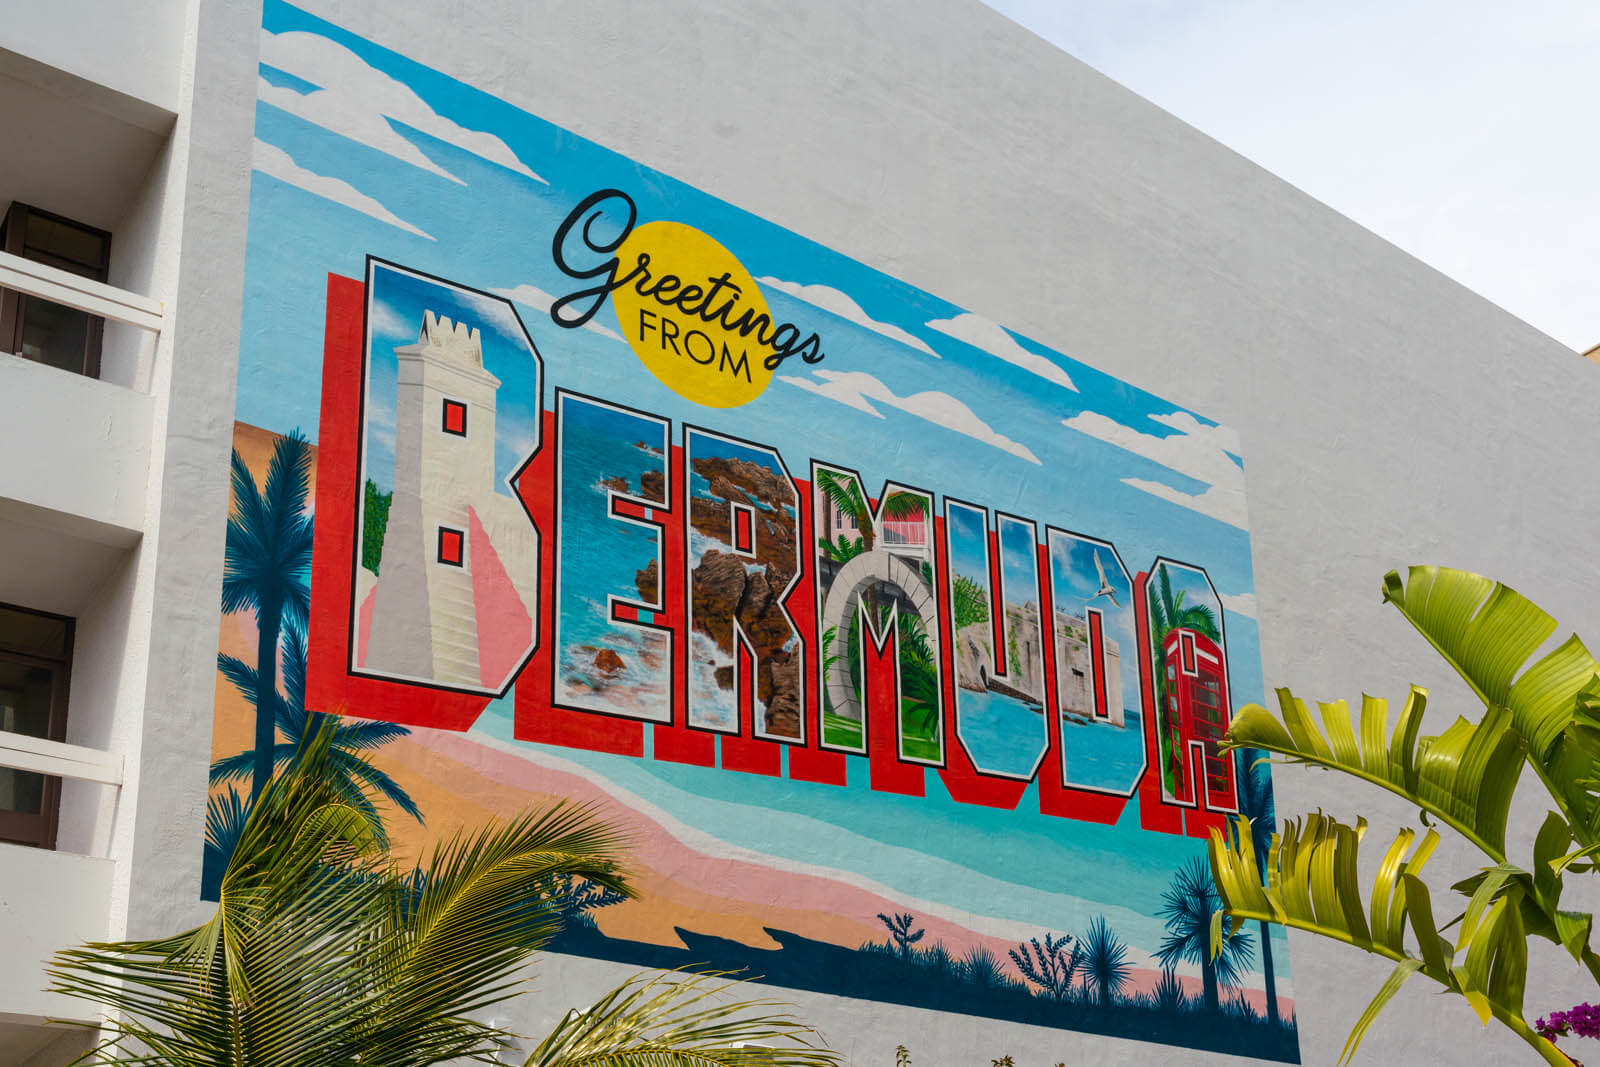 Greetings from Bermuda mural in Hamilton